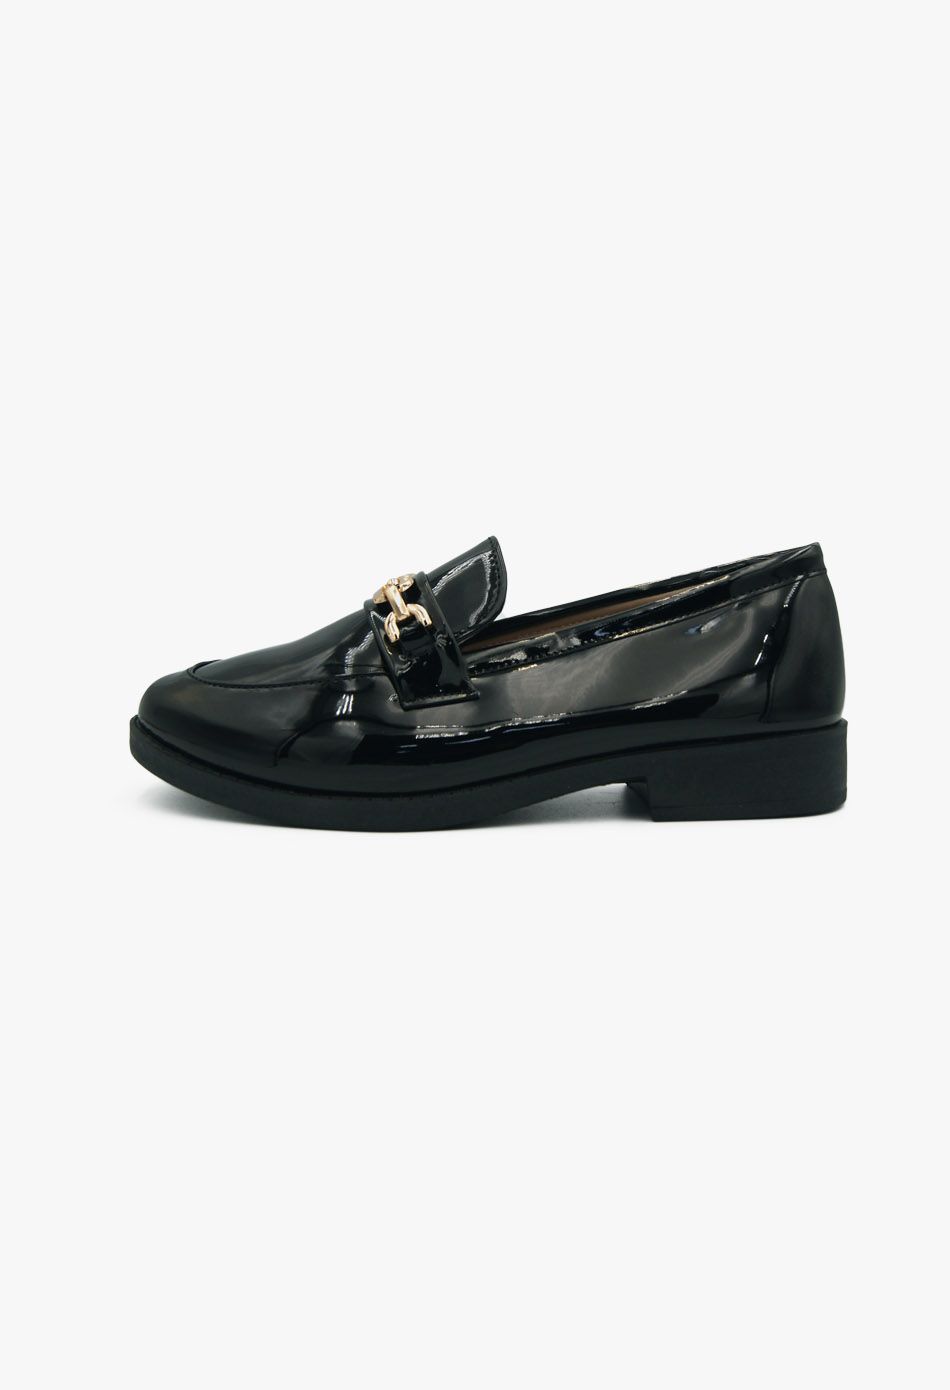 Γυναικεία Loafers σε Μαύρο Χρώμα Λουστρίνι / XY-622-black Γυναικεία Oxfords & Loafers joya.gr